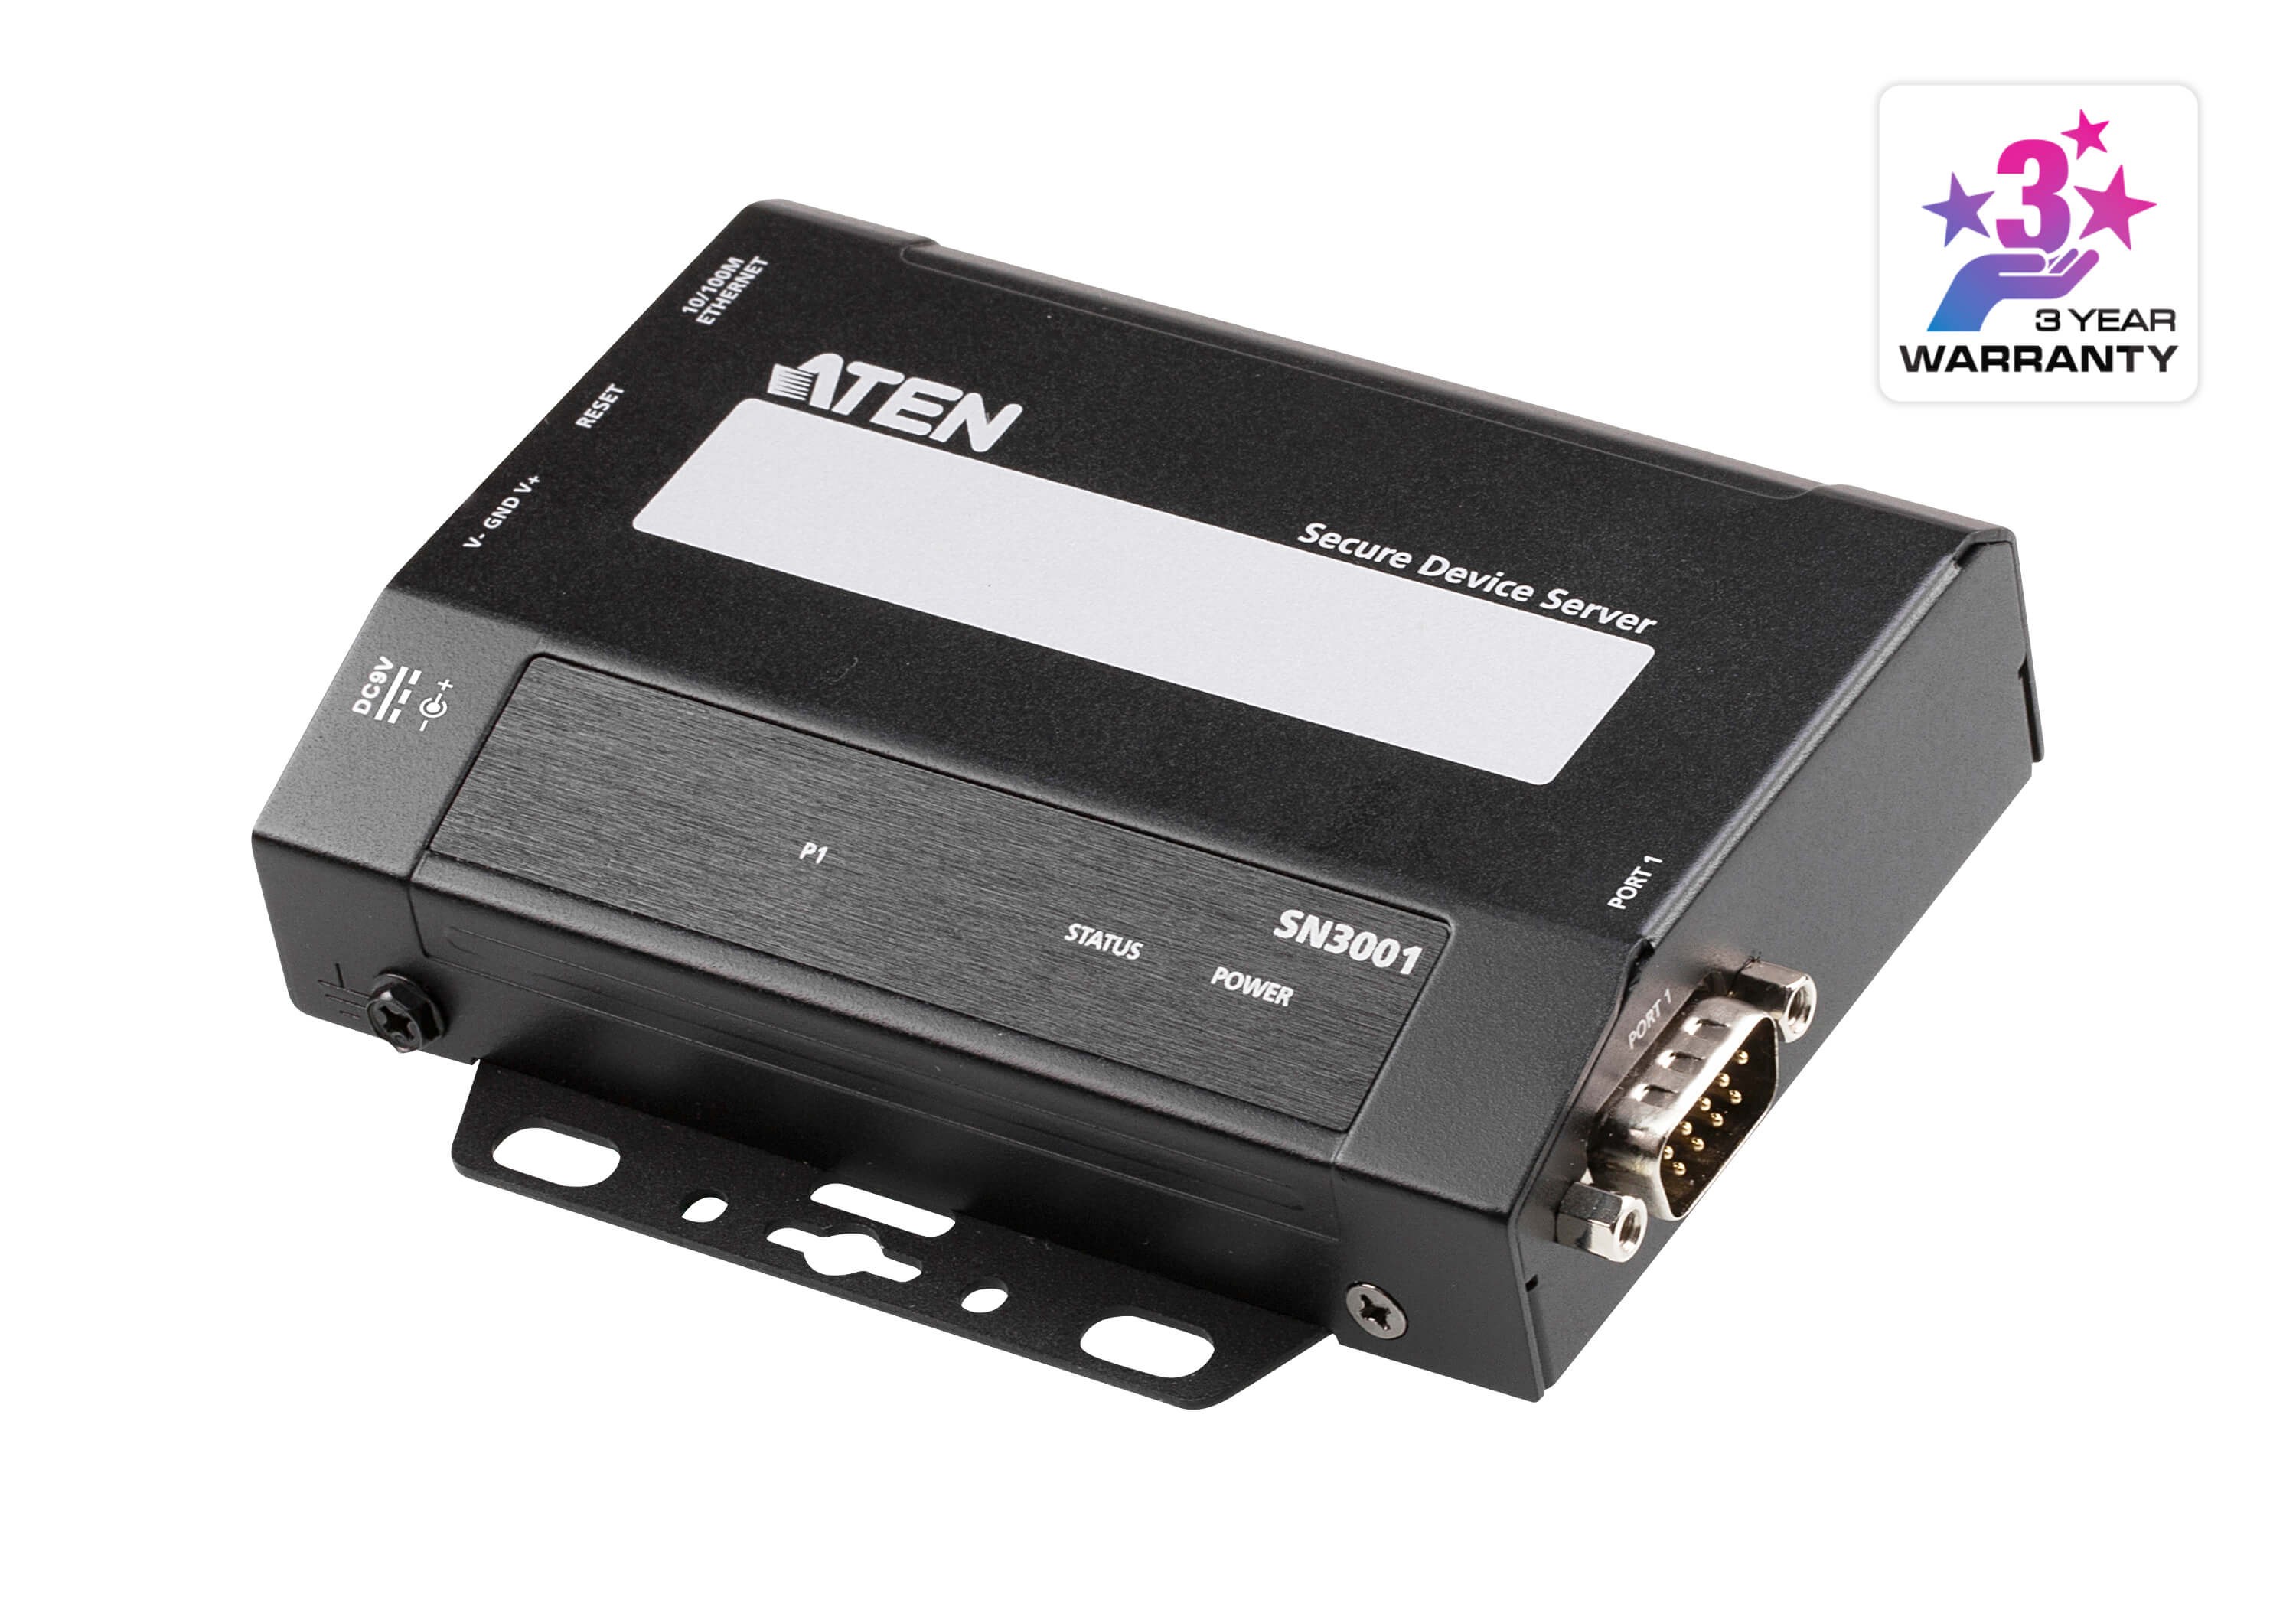 SN3001  1-Port RS-232 Secure Device Server over Ethernet Transmission